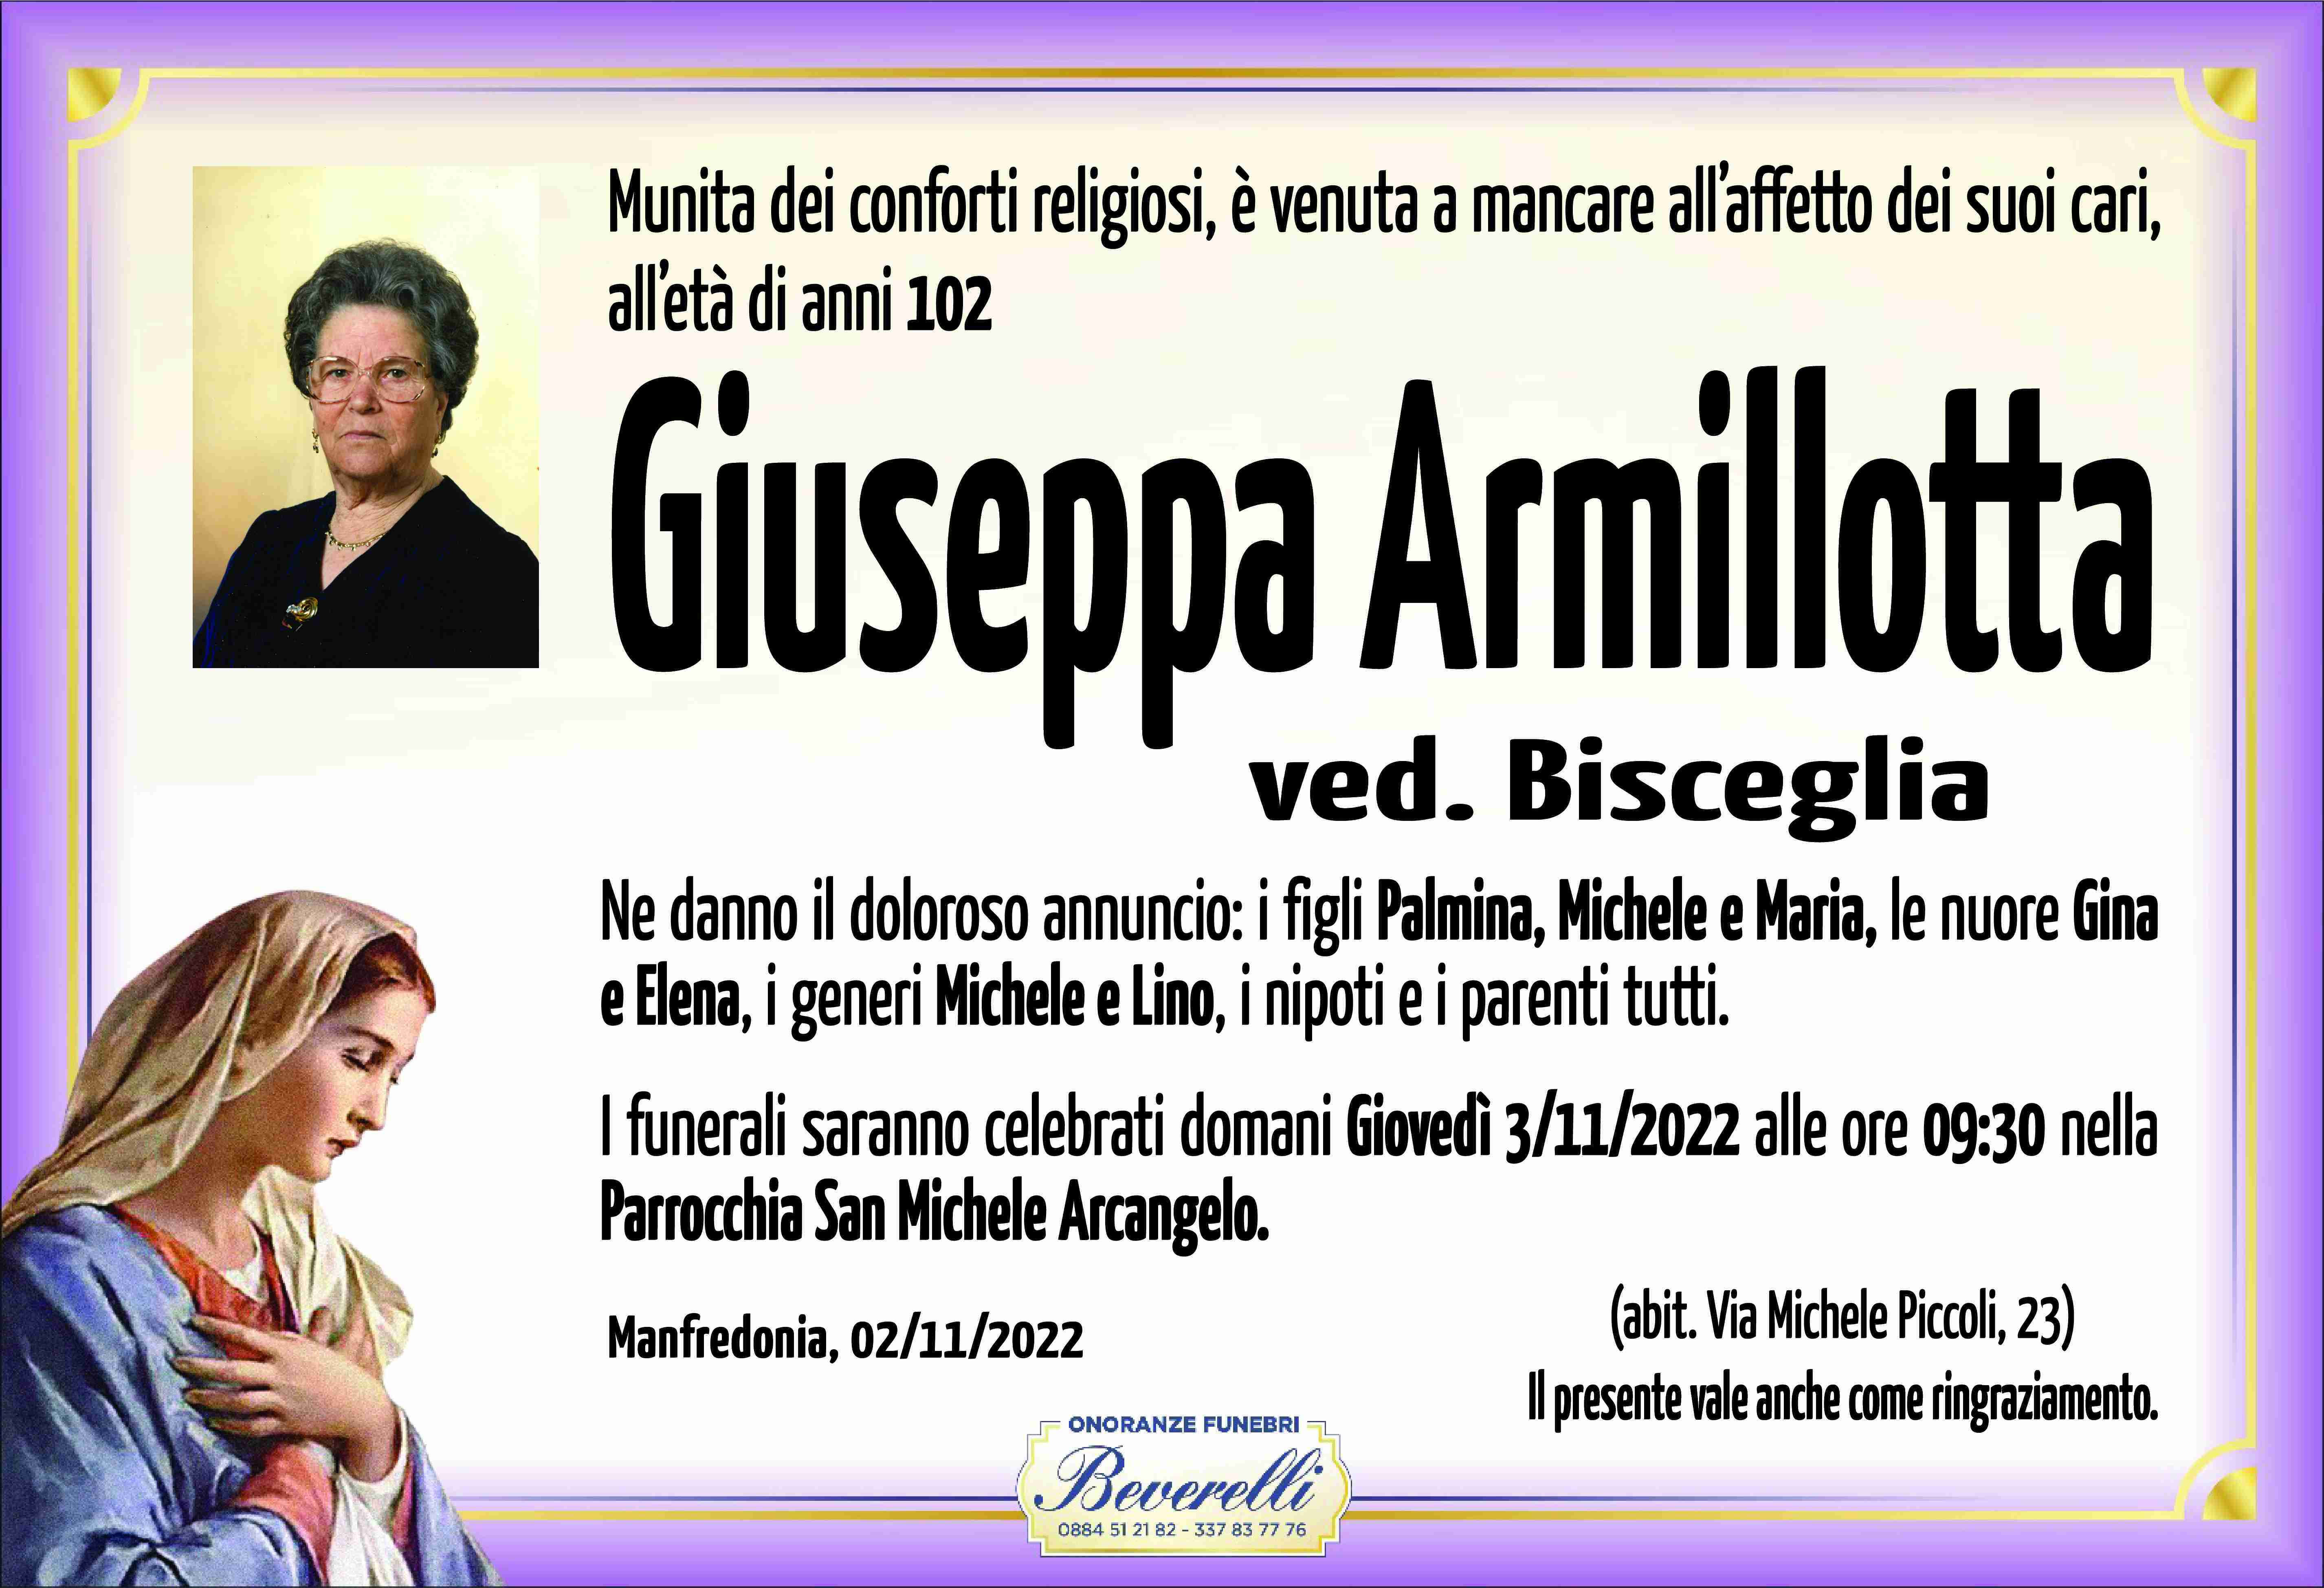 Giuseppa Armillotta